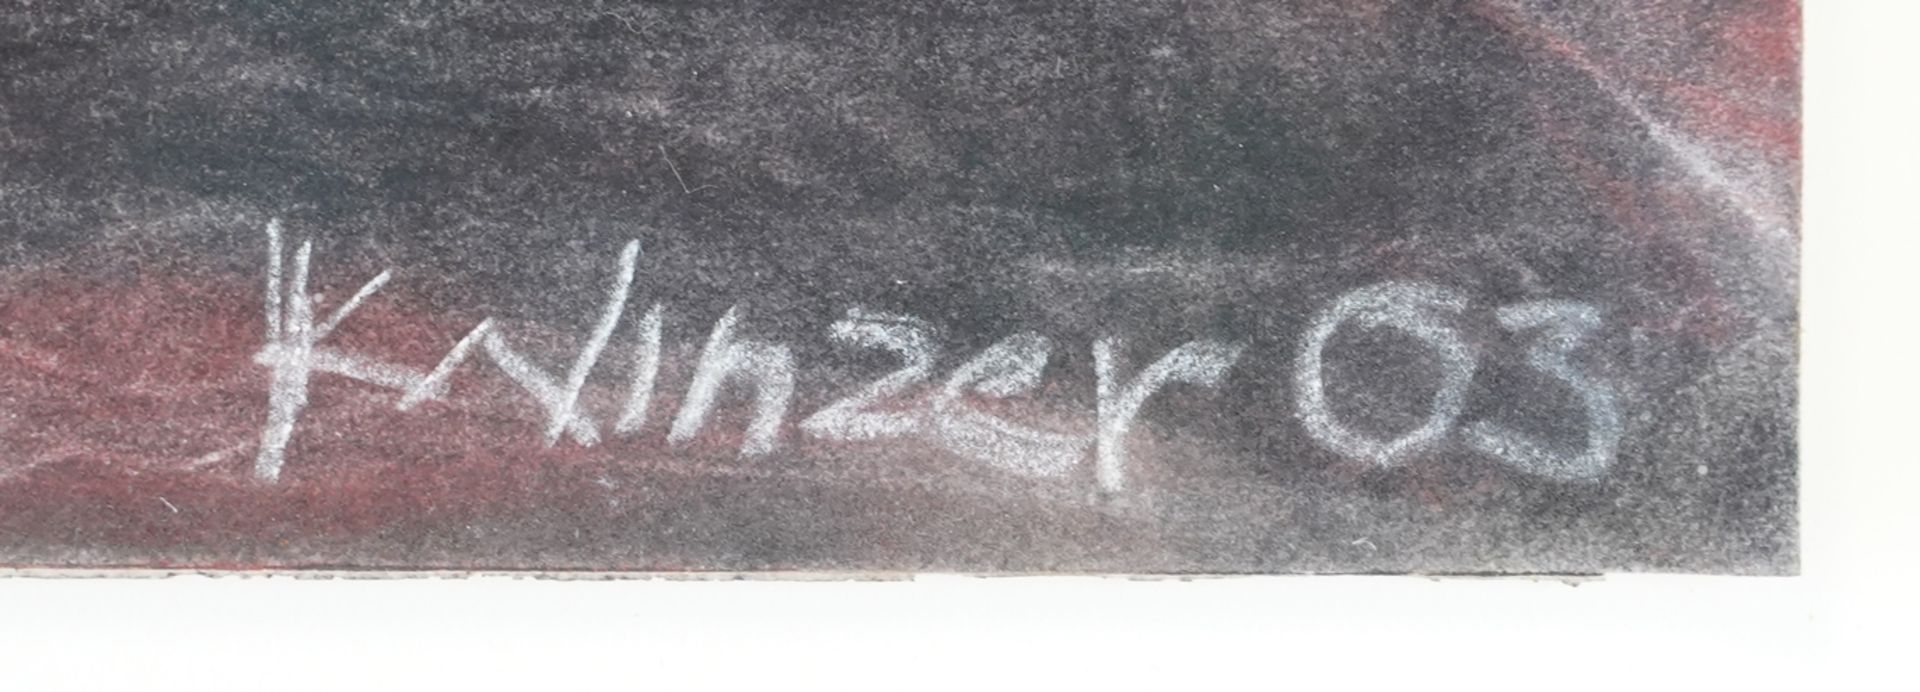 Winzer, Konrad - Bild 3 aus 3